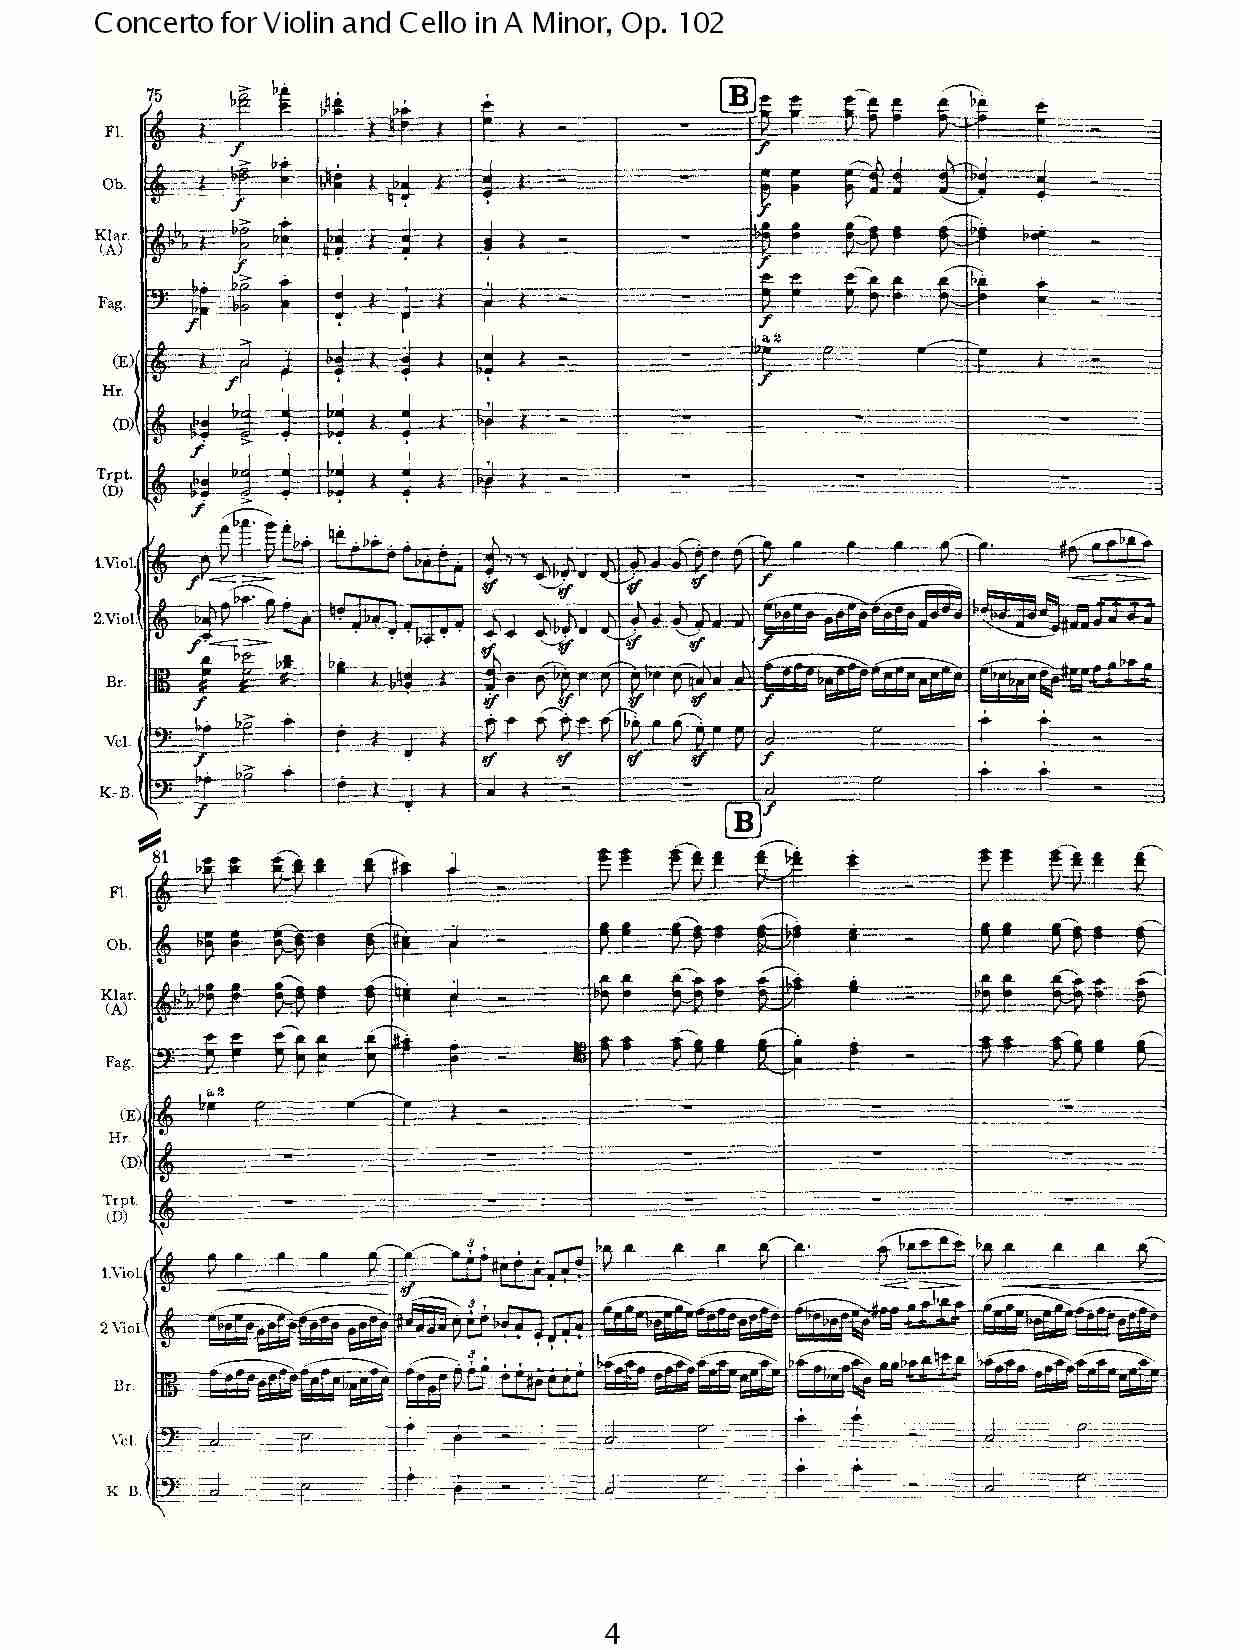 A小调小提琴与大提琴协奏曲, Op.102第一乐章（一）总谱（图5）